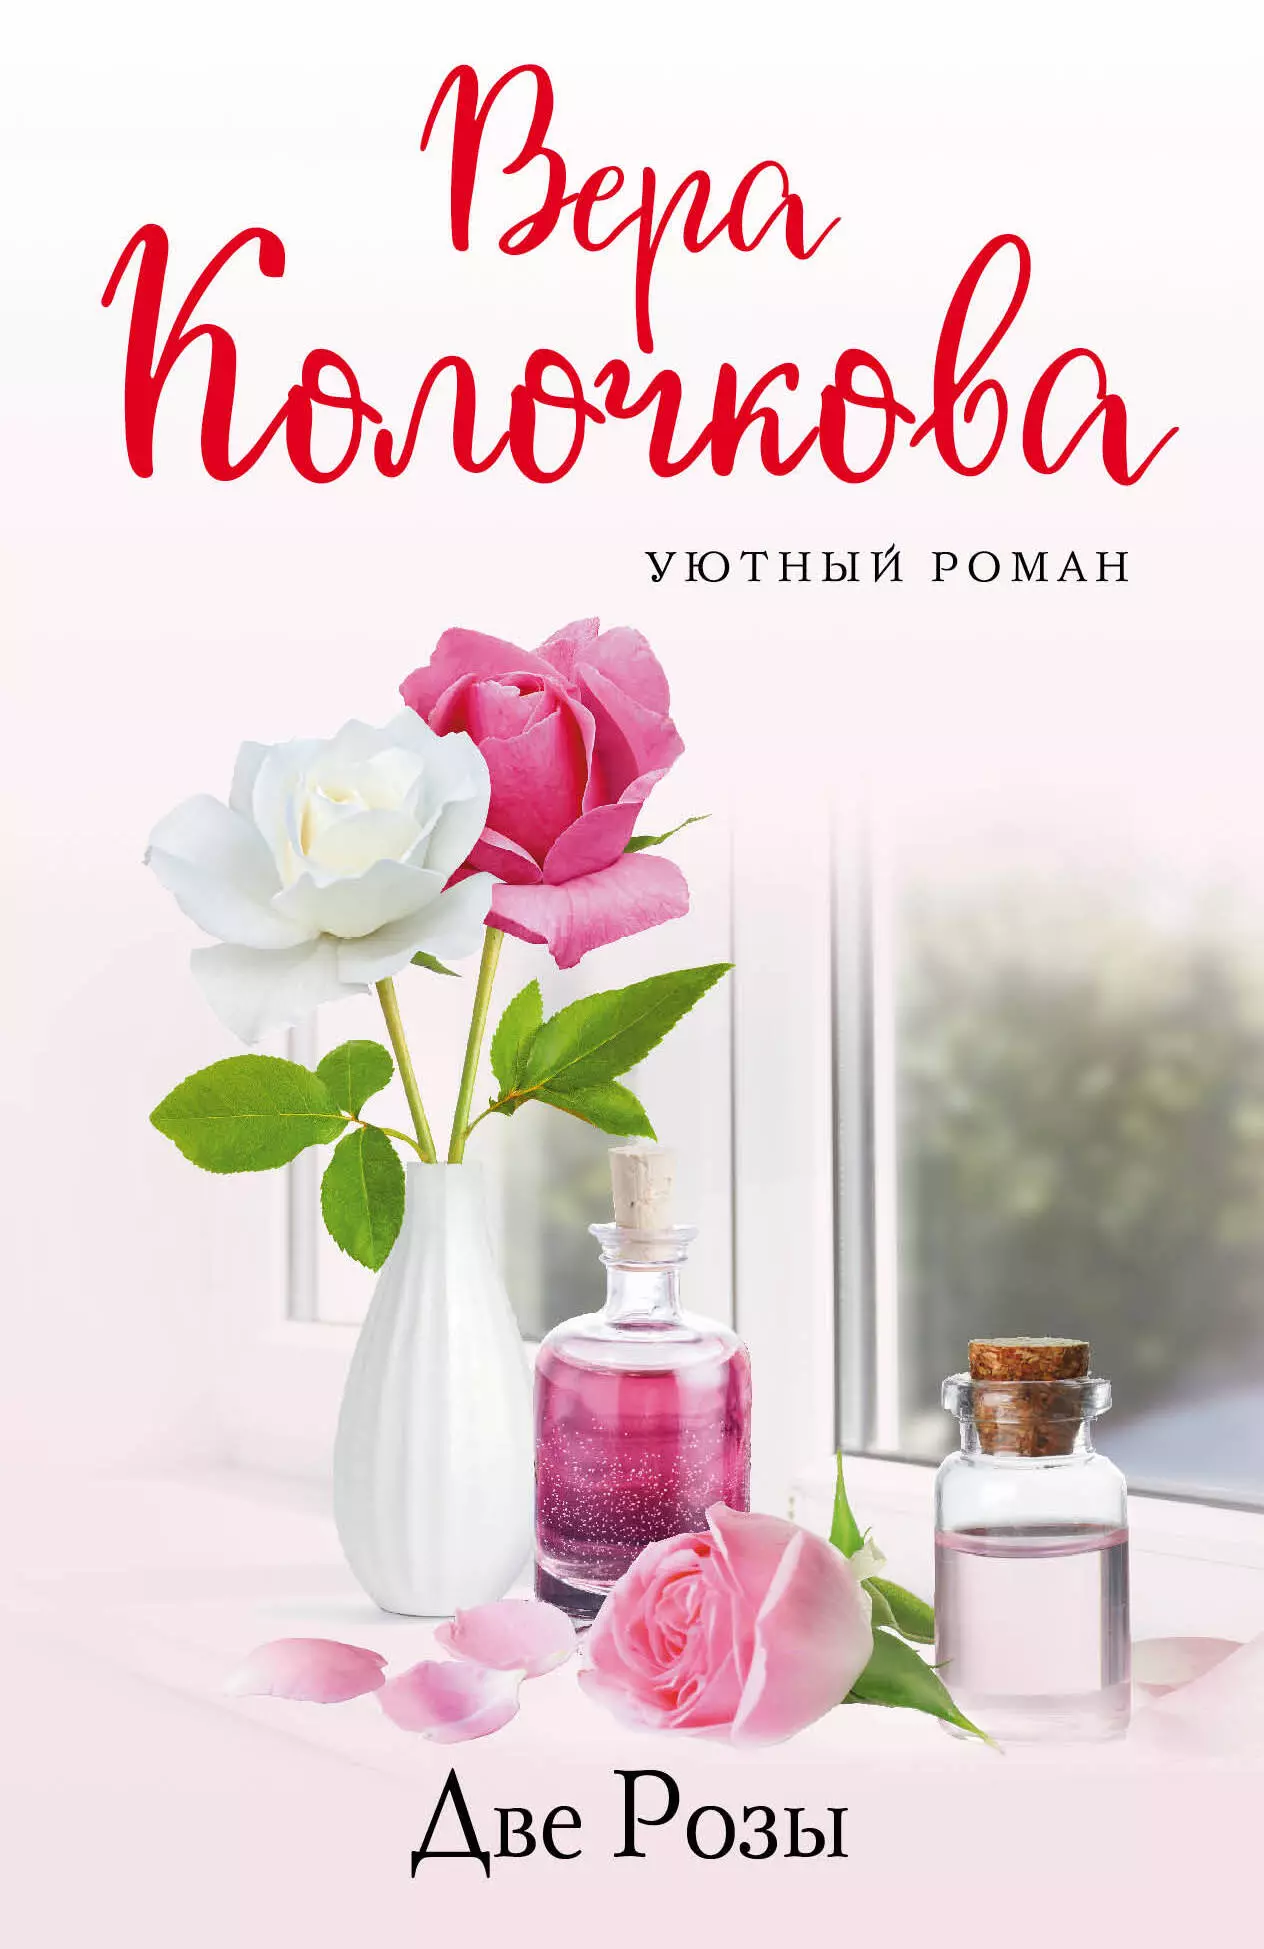 Колочкова Вера Александровна - Две Розы